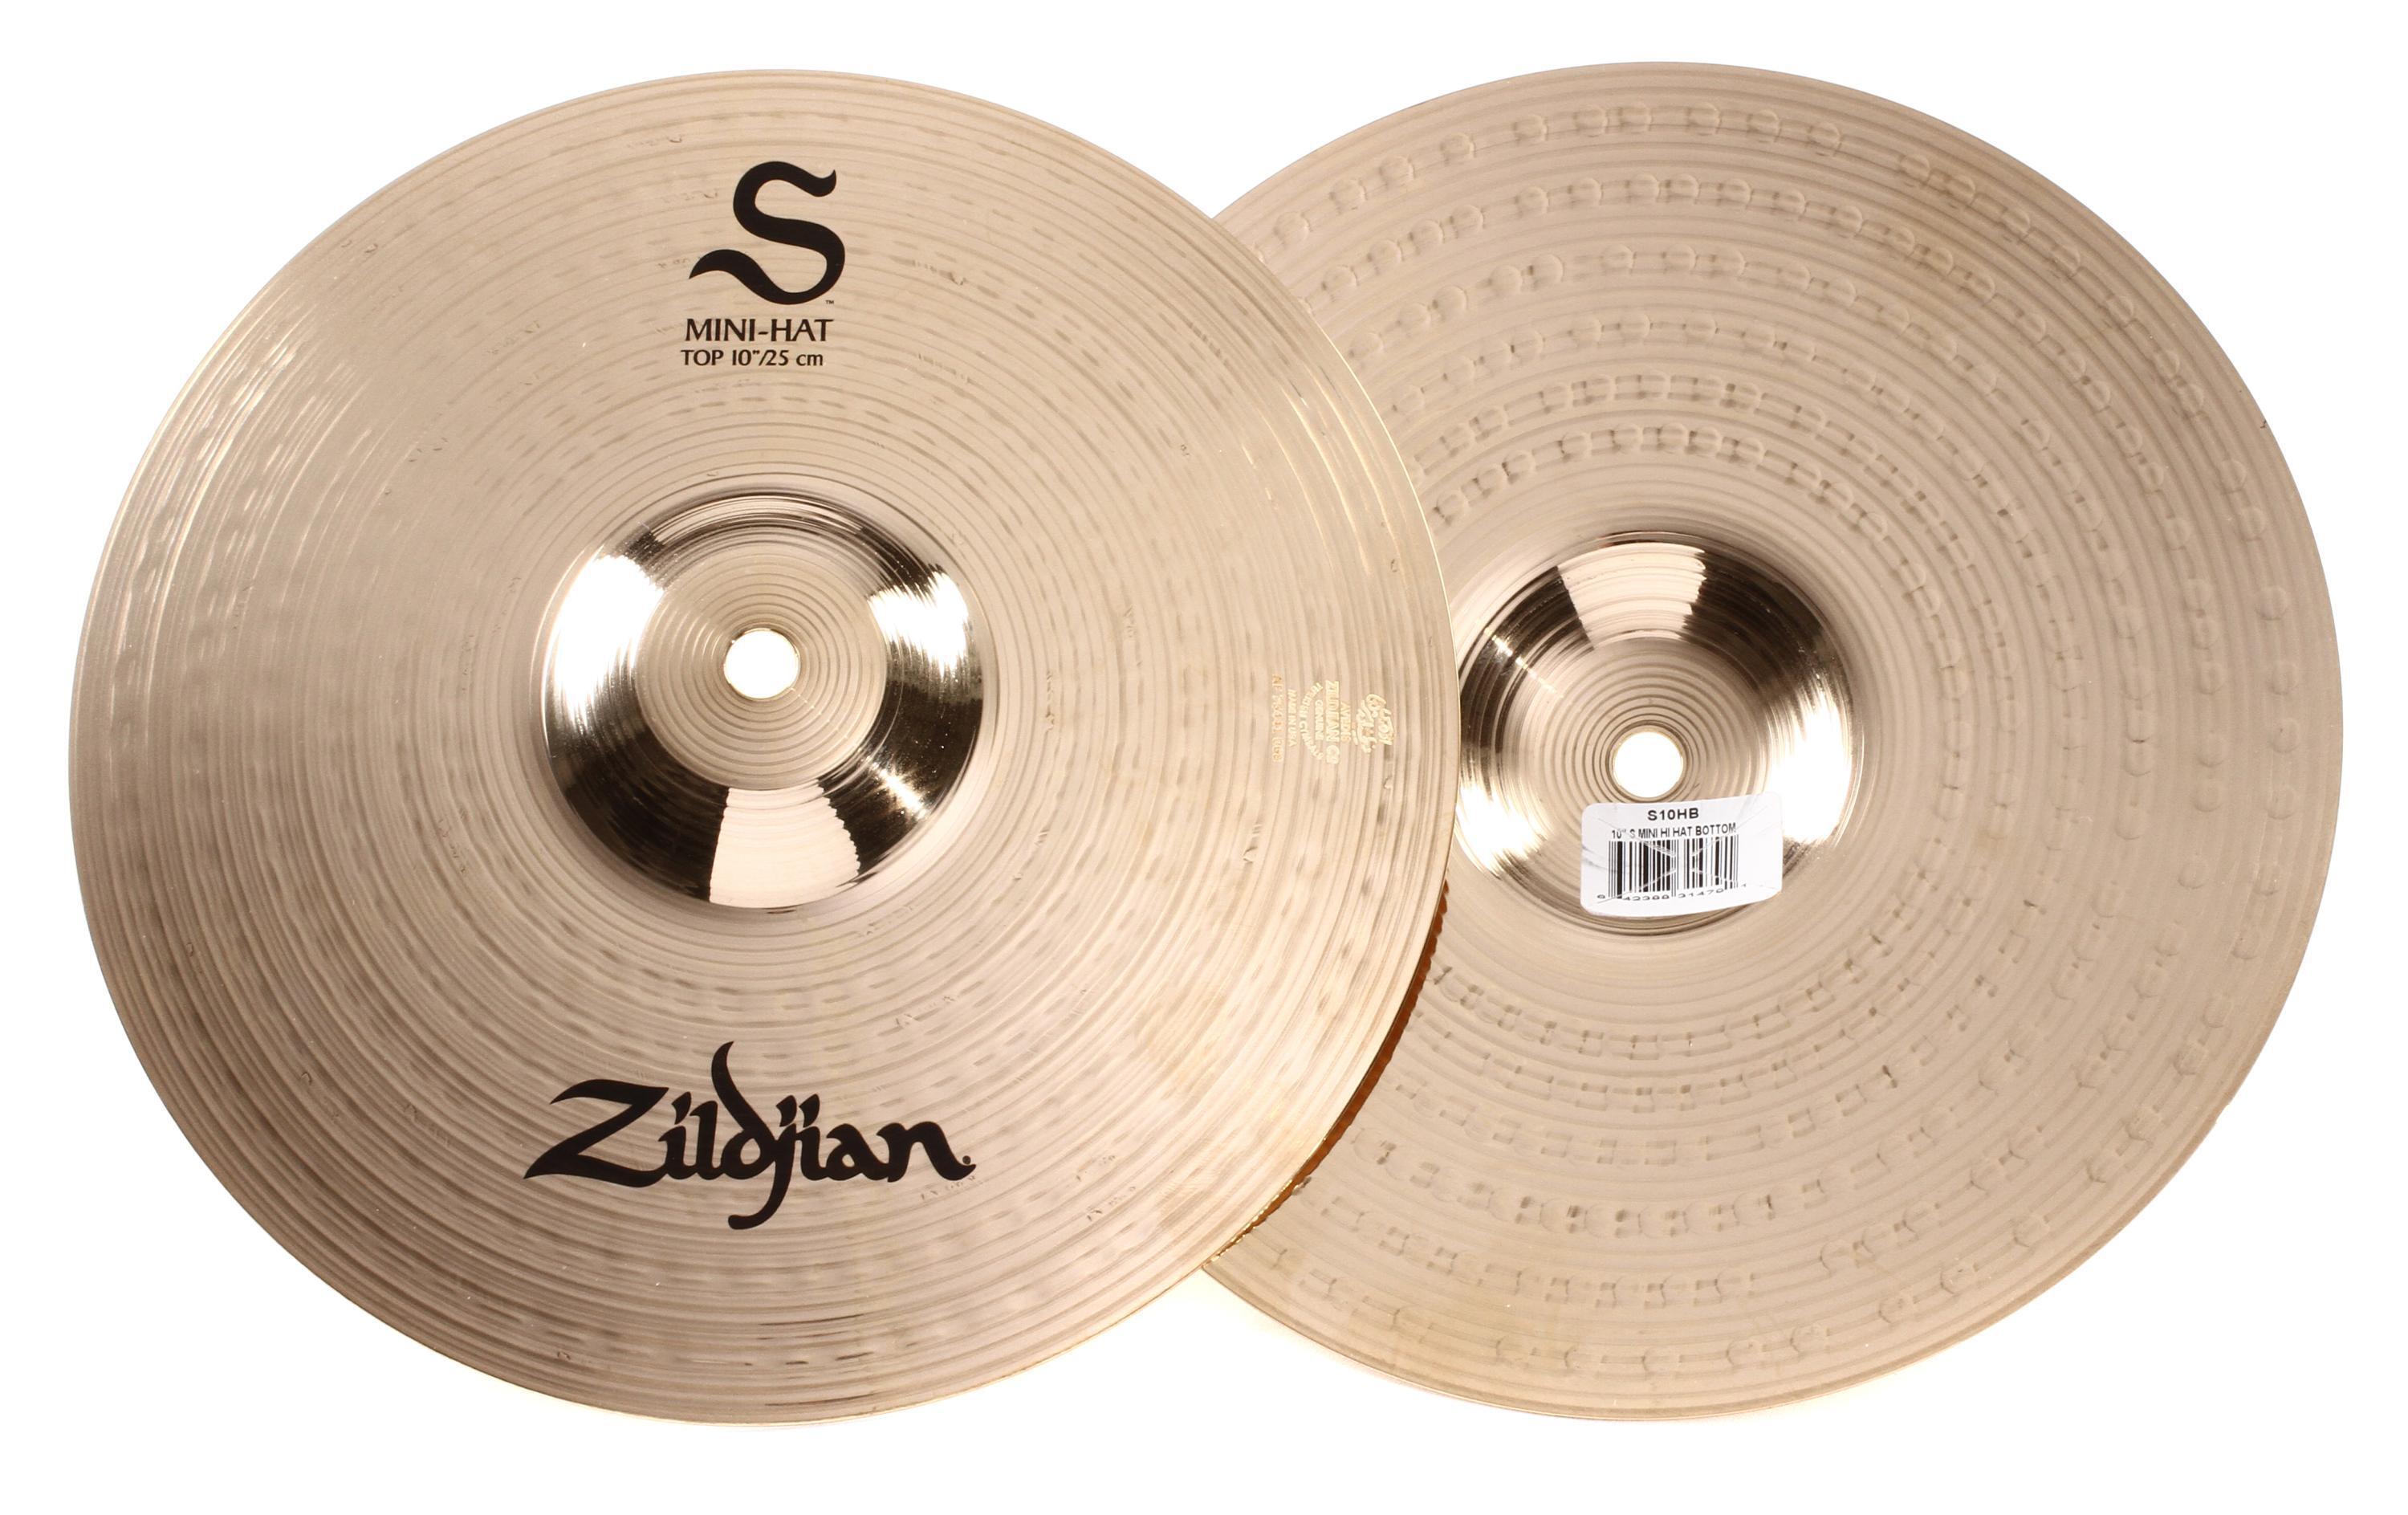 Zildjian S Series Mini Hi-hat Cymbals - 10